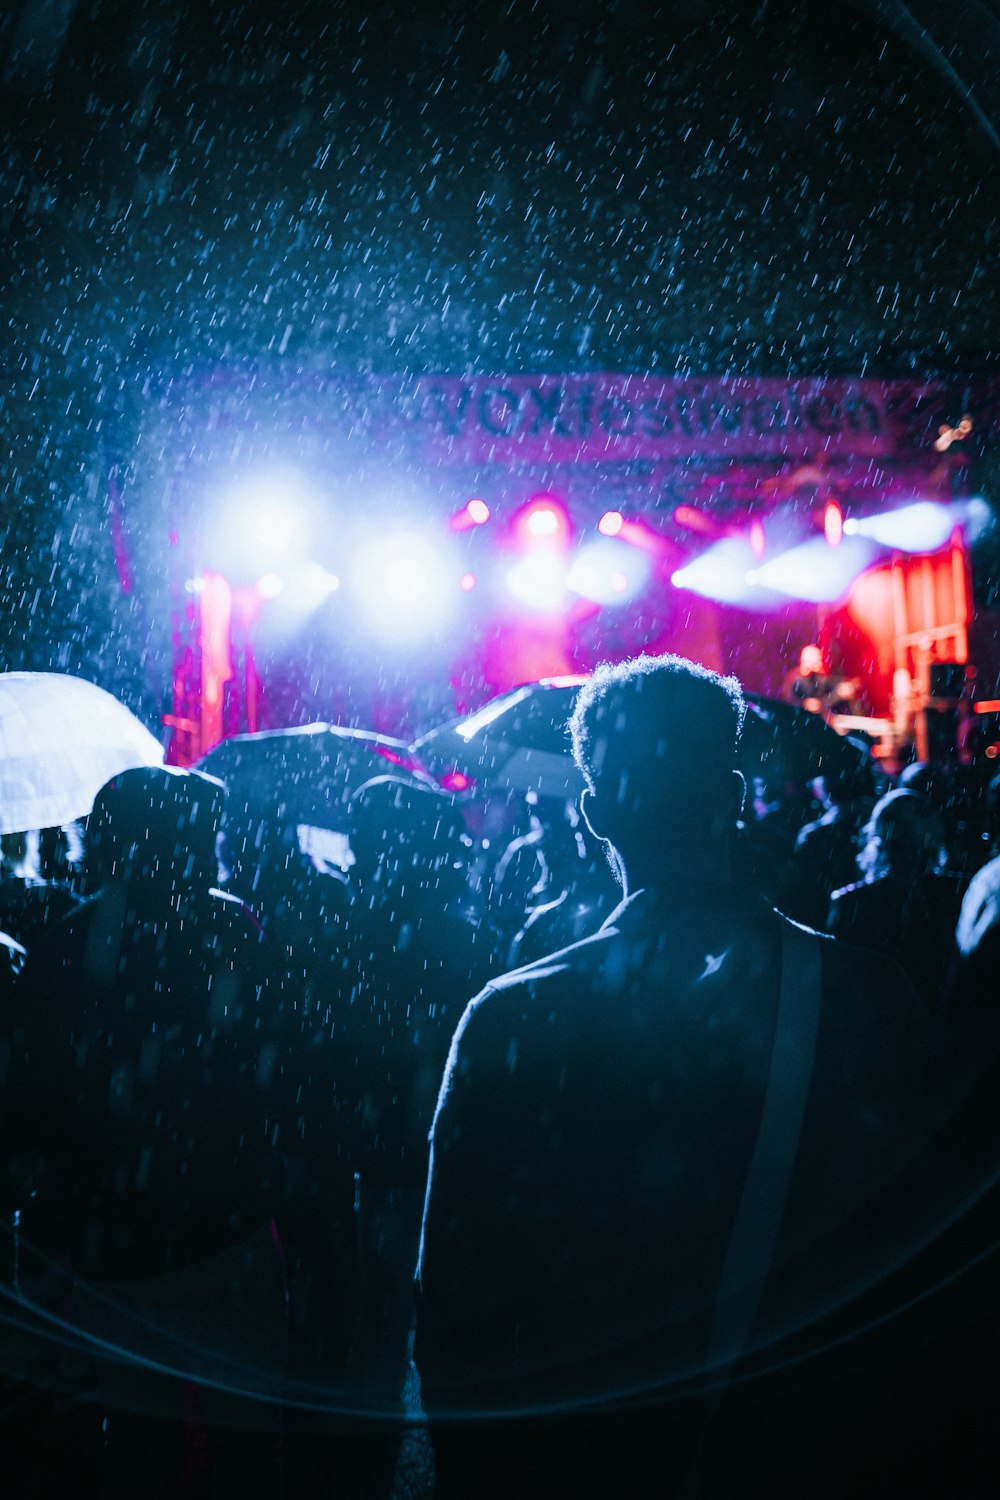 Gente viendo concierto en vivo durante la lluvia